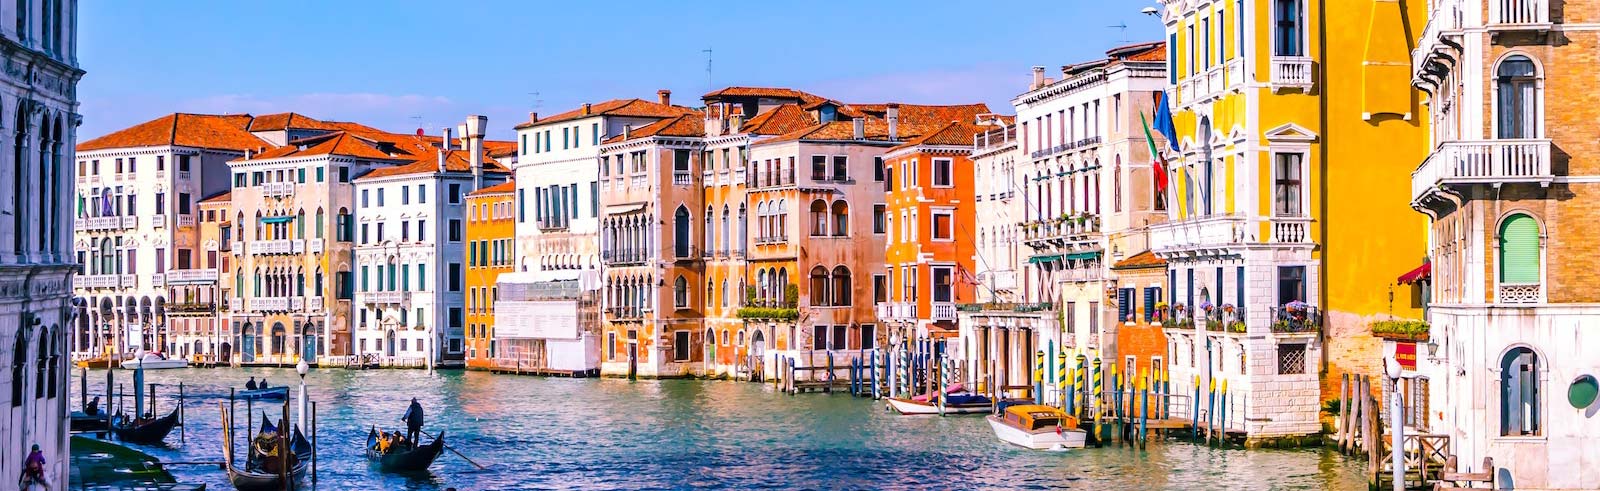 قناة البندقية إيطاليا مع المباني الملونة